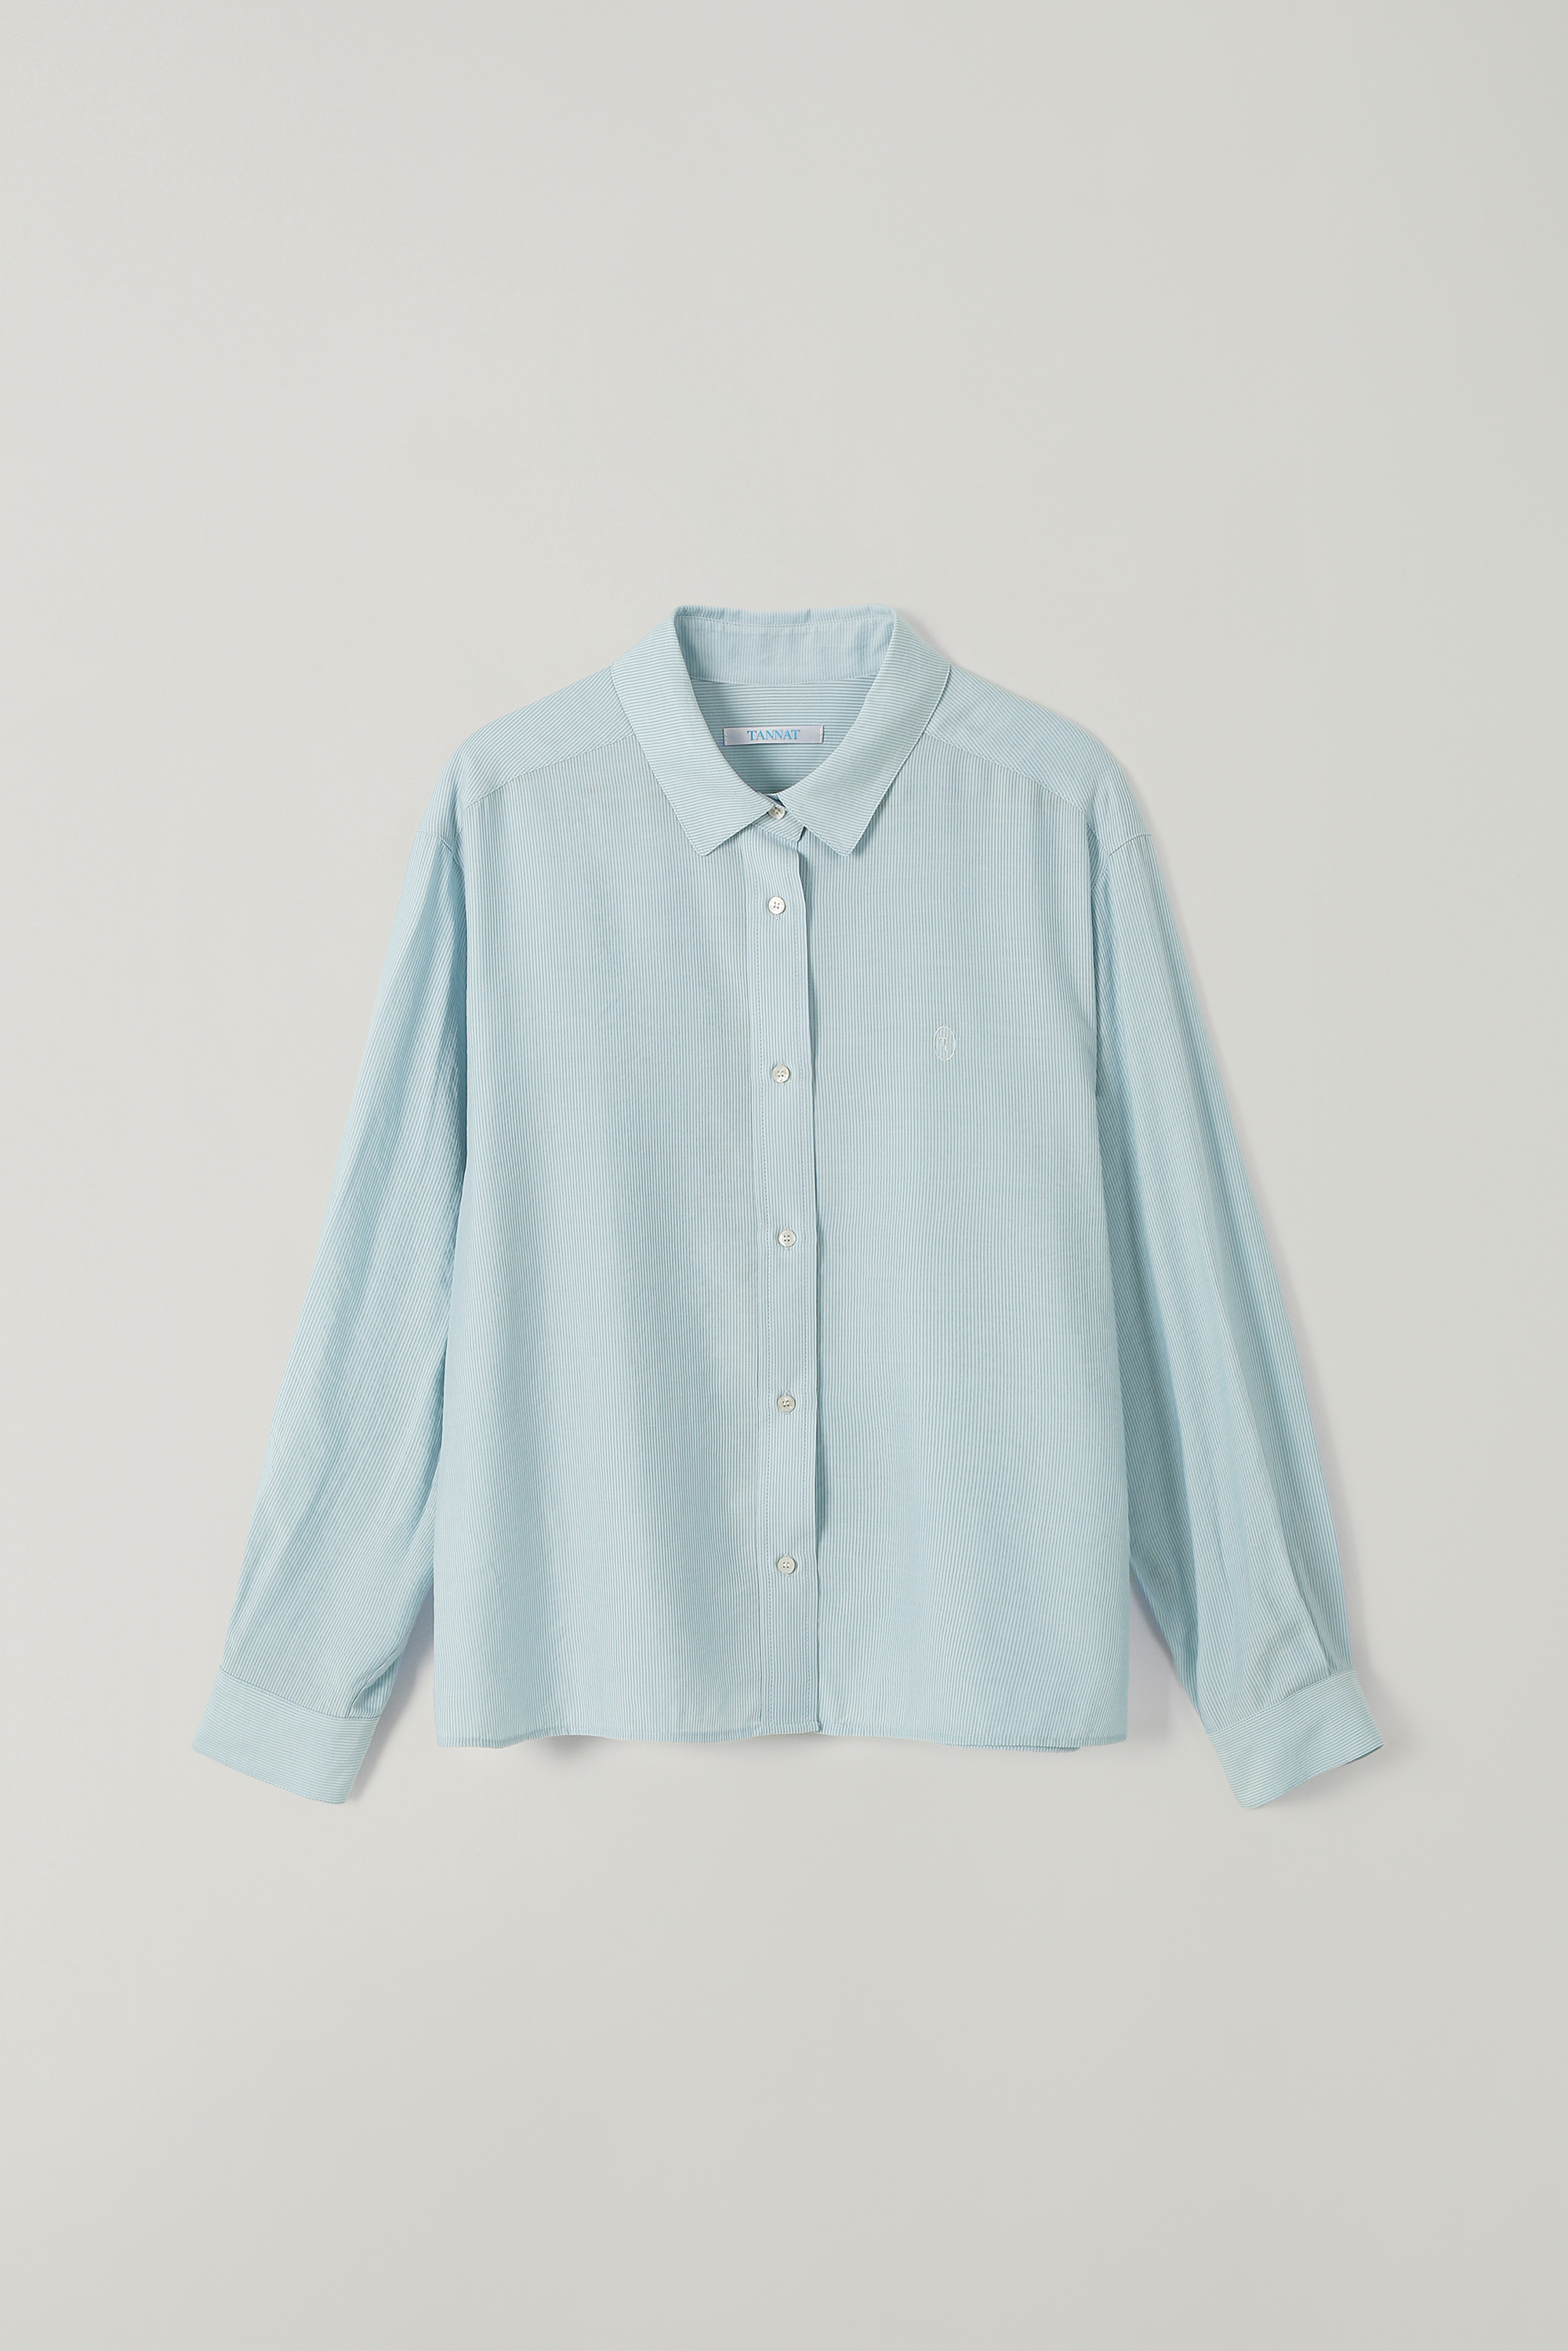 (3rd re-stock) T/T Shimmer stripe shirt (sky blue)